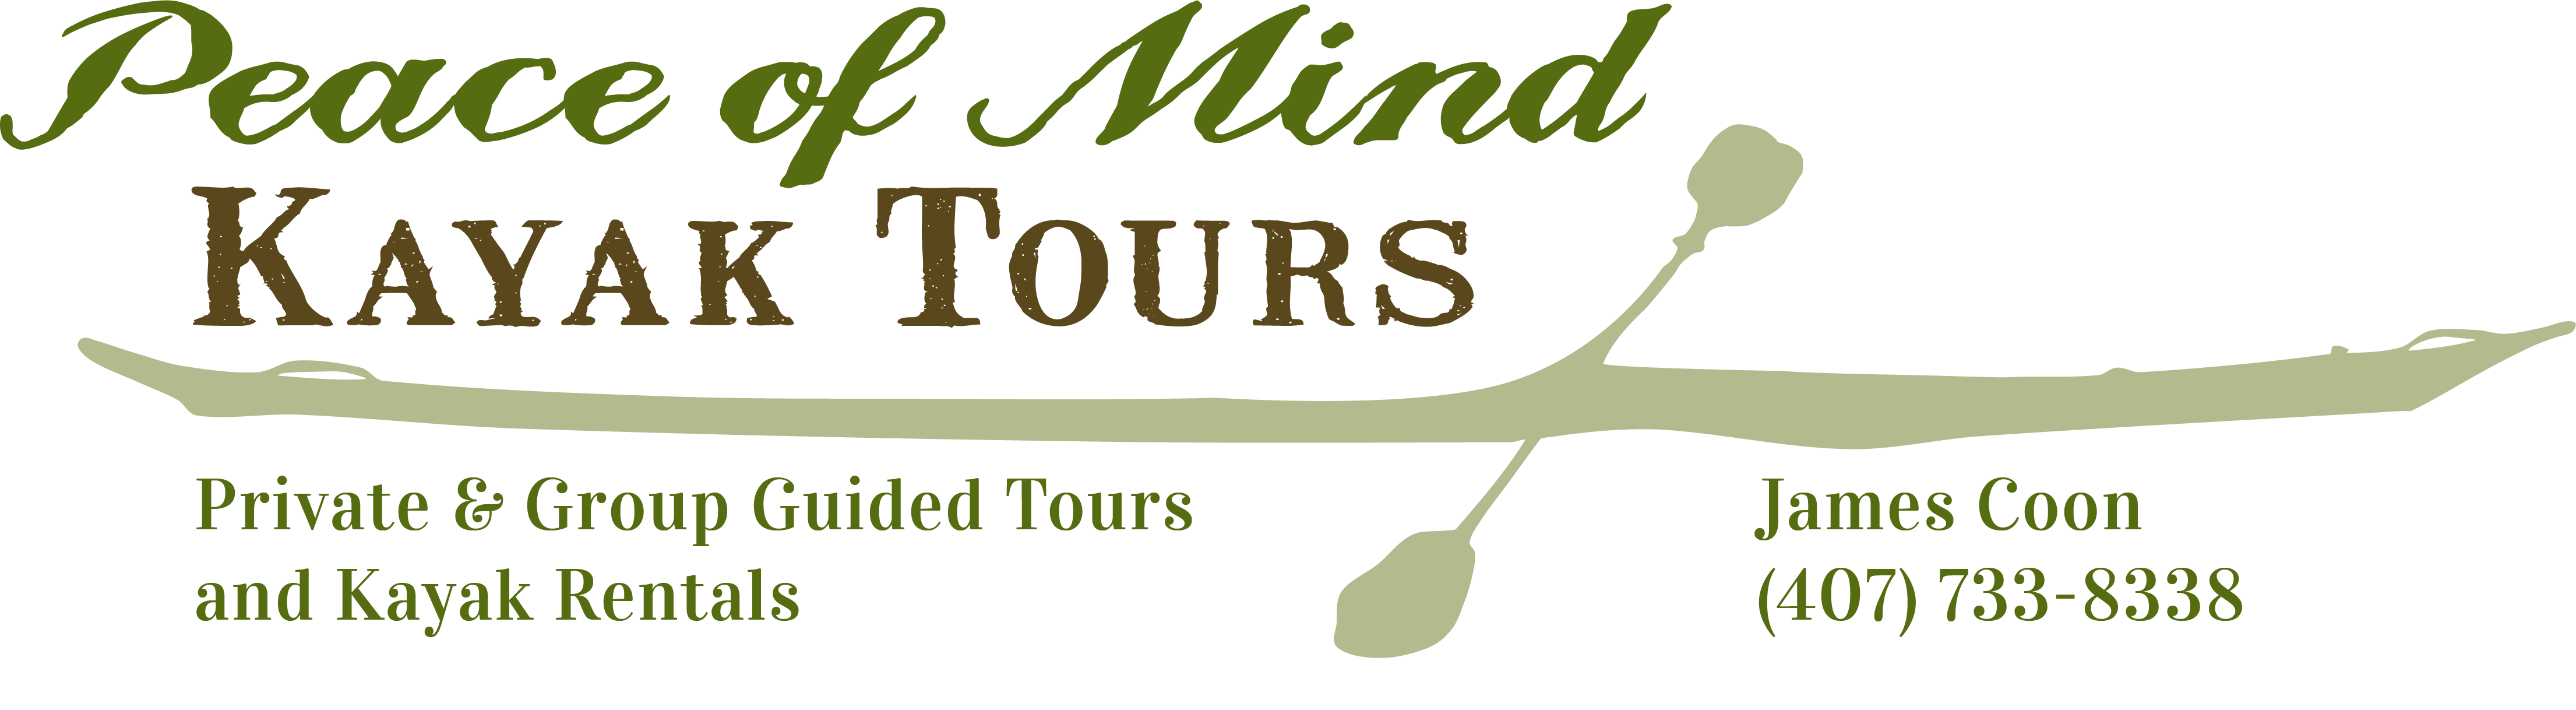 peace of mind kayak tours and rentals logo